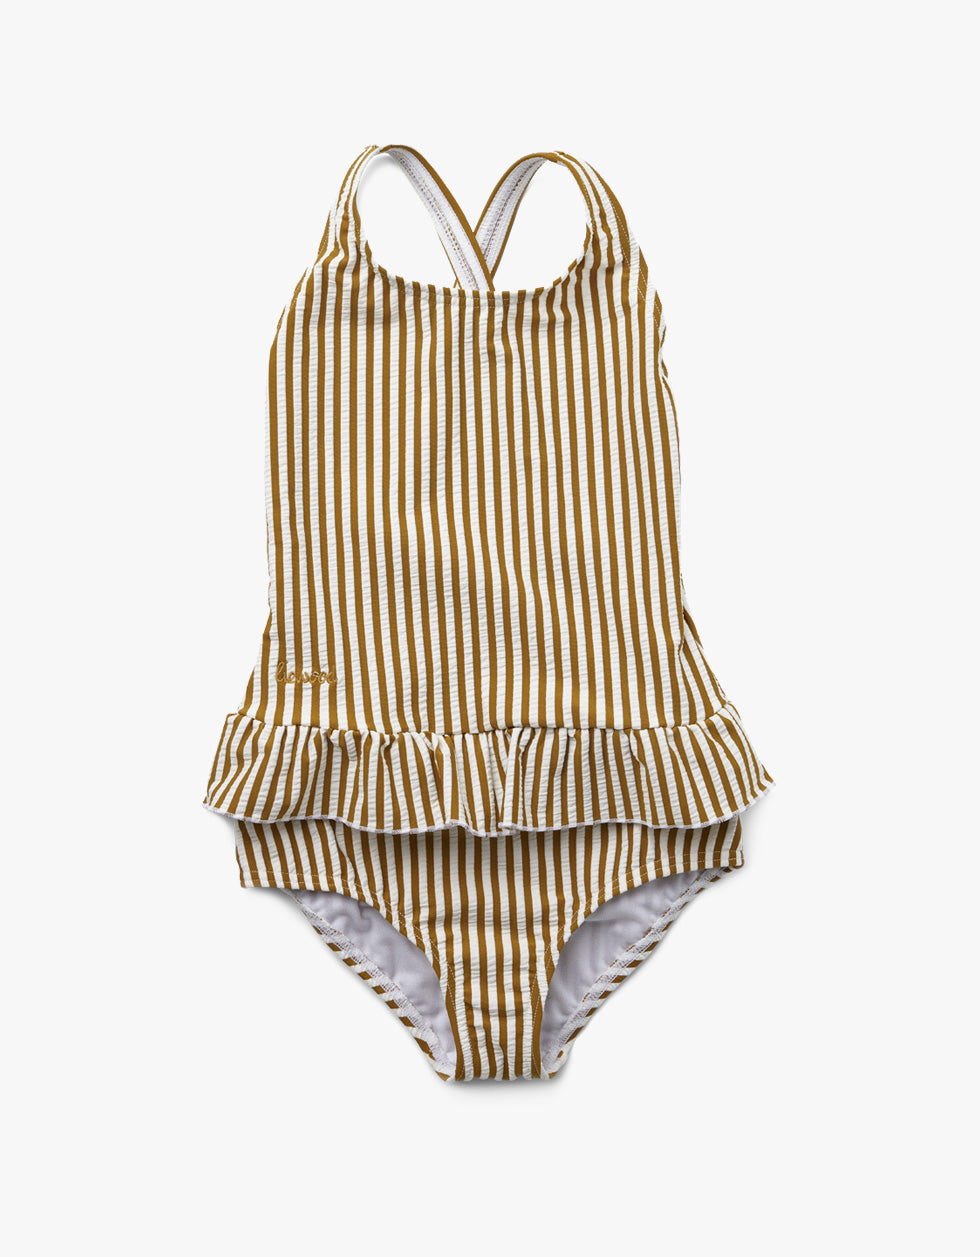 Amara Swimsuit Seersucker - Y/D Stripe: Mustard/White